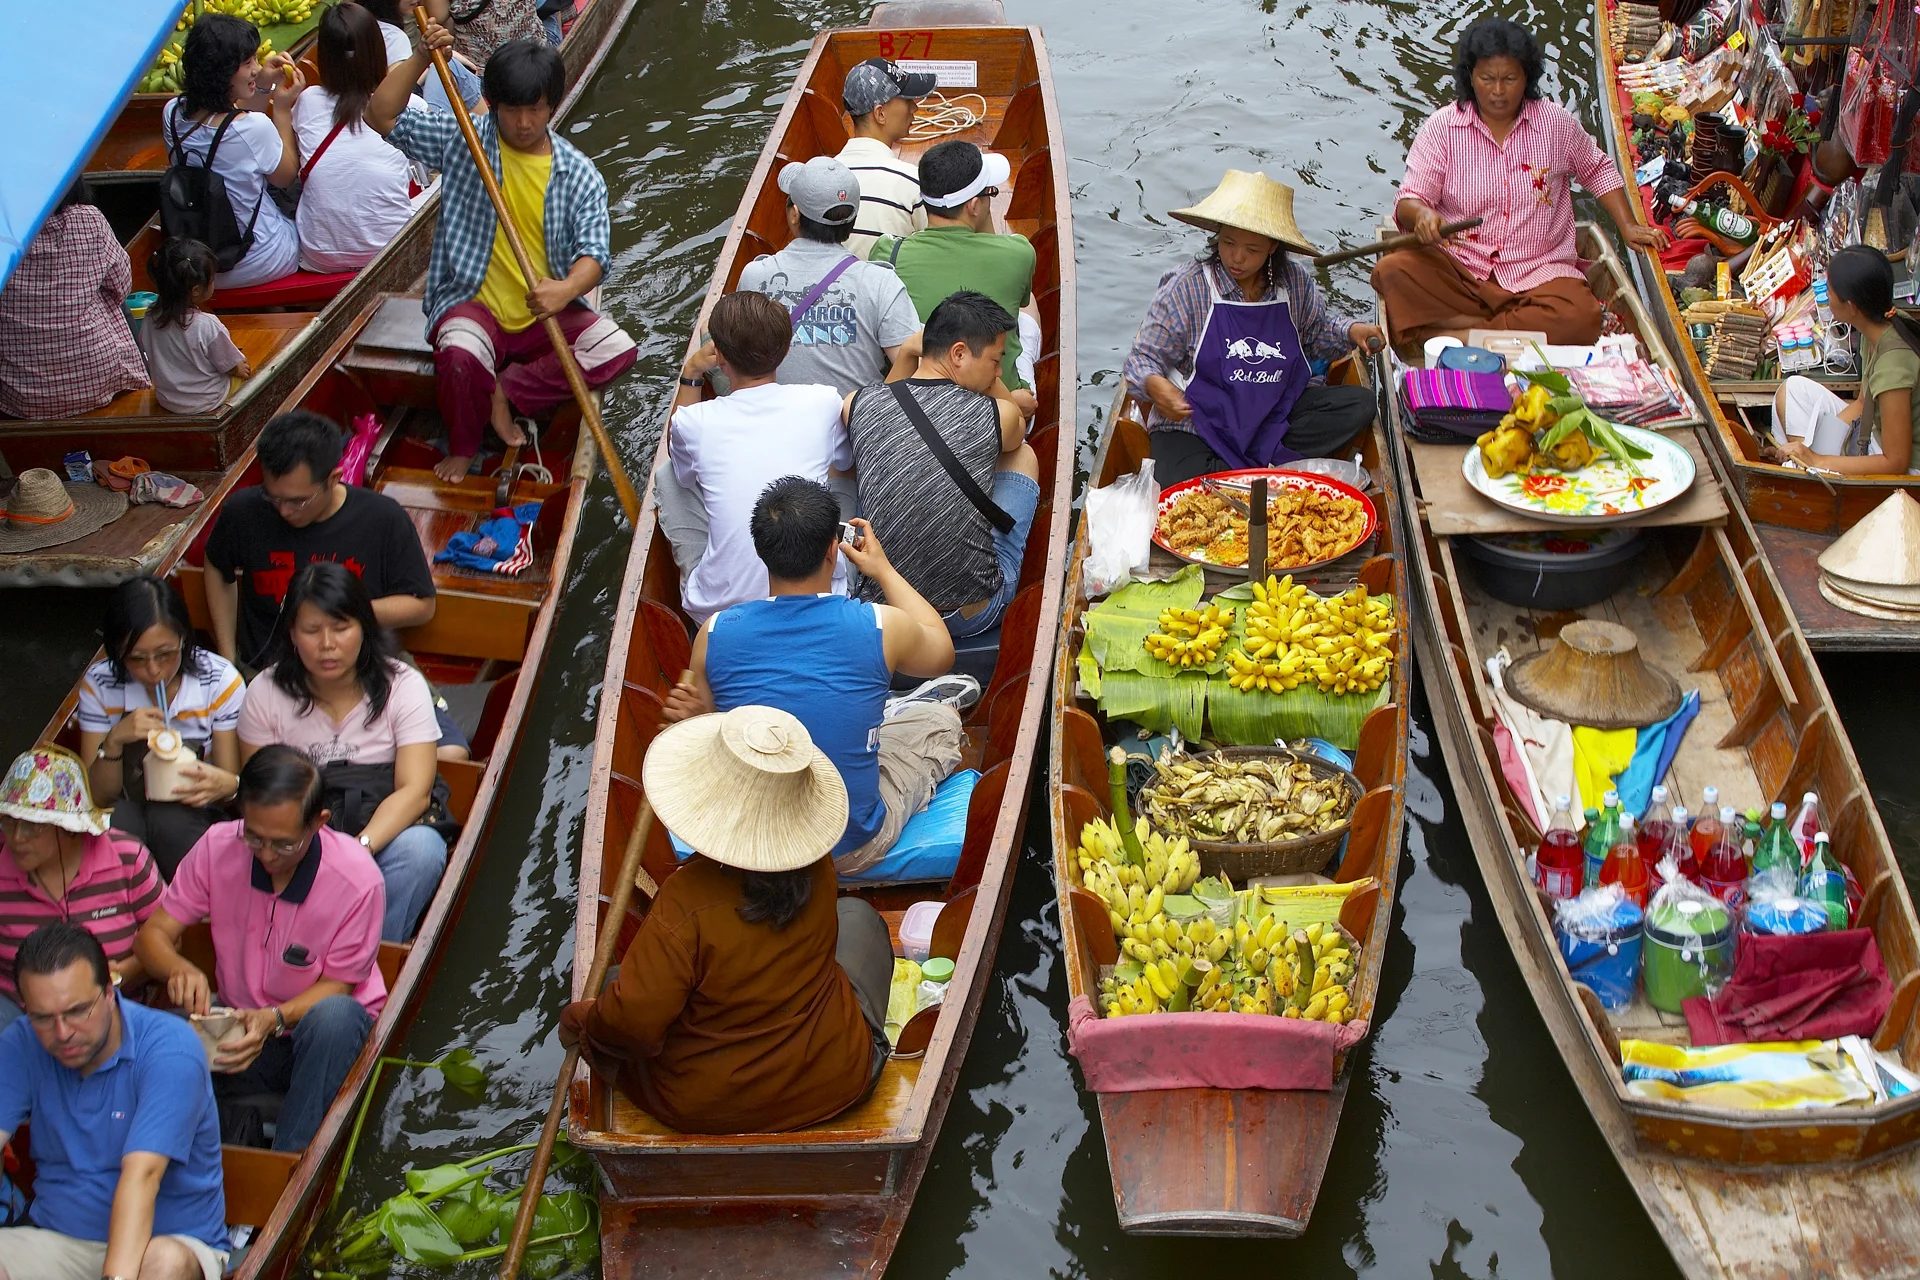 Gente del mercado en barcos en Tailandia